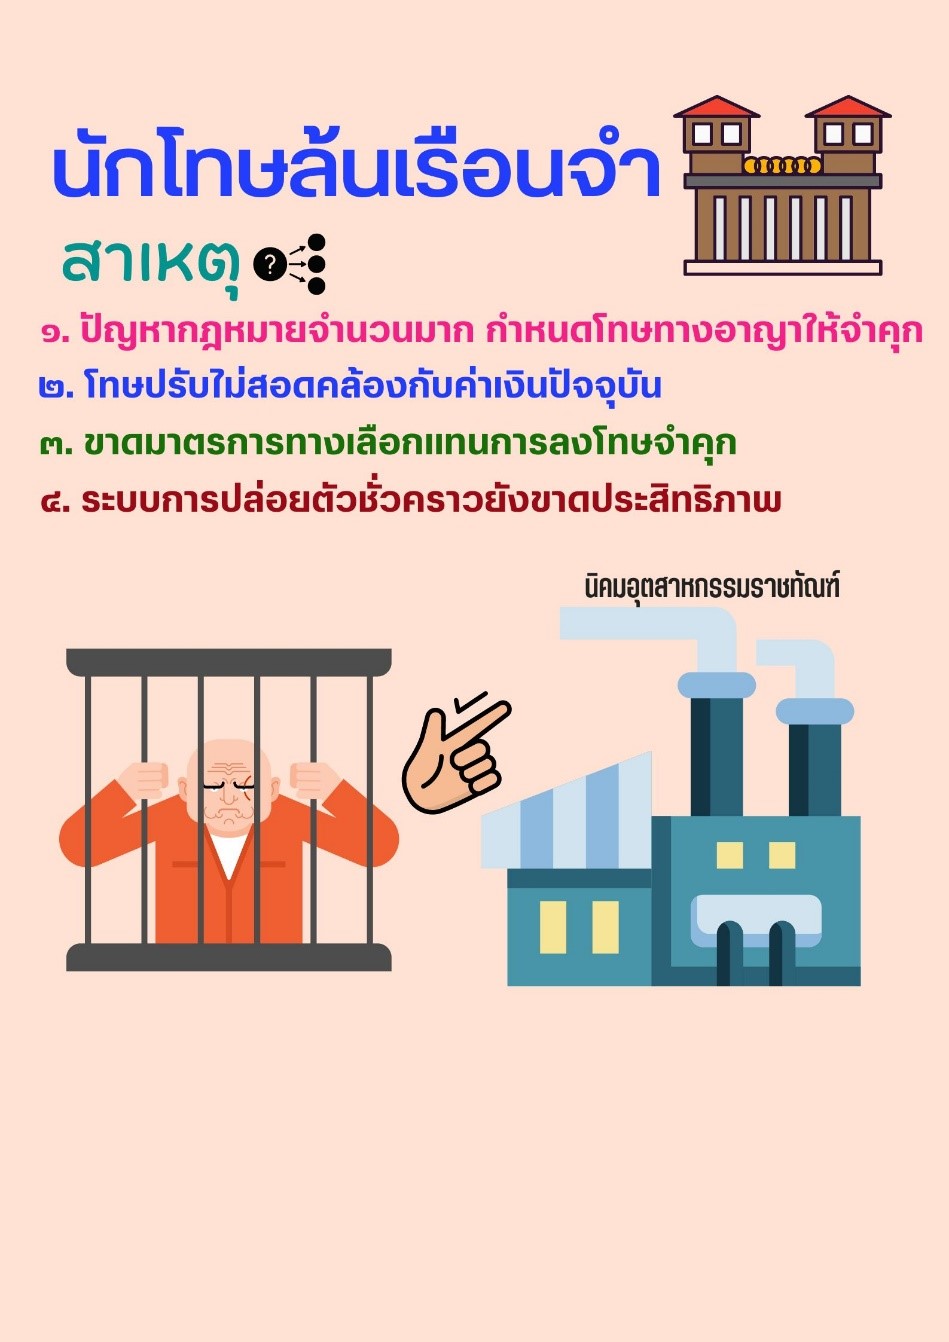 นิคมอุตสาหกรรมราชทัณฑ์ : ทางแก้ปัญหานักโทษล้นเรือนจำของไทย